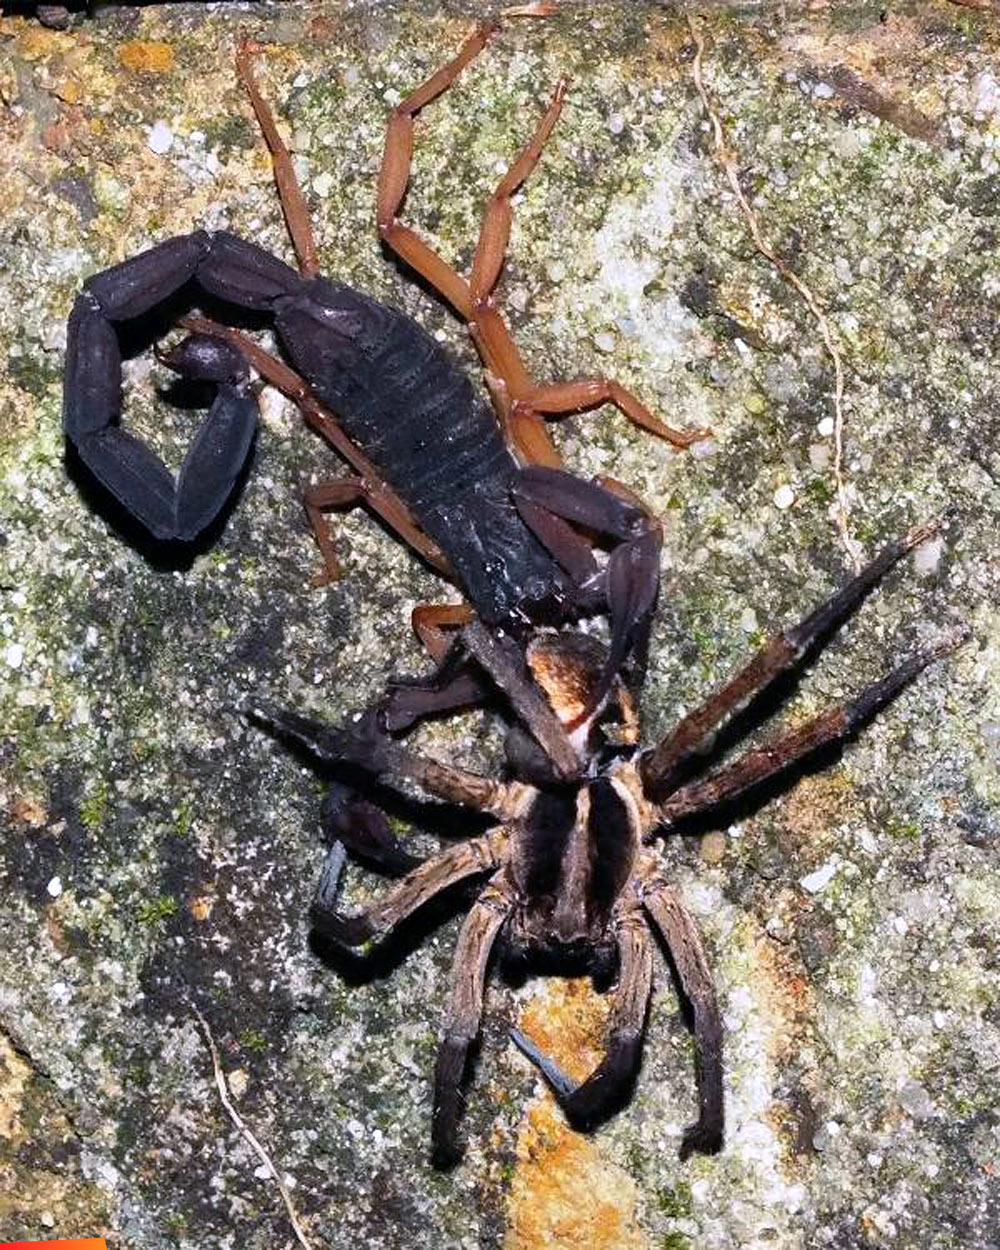 When predators meet: Scorpion vs. Wolf spider